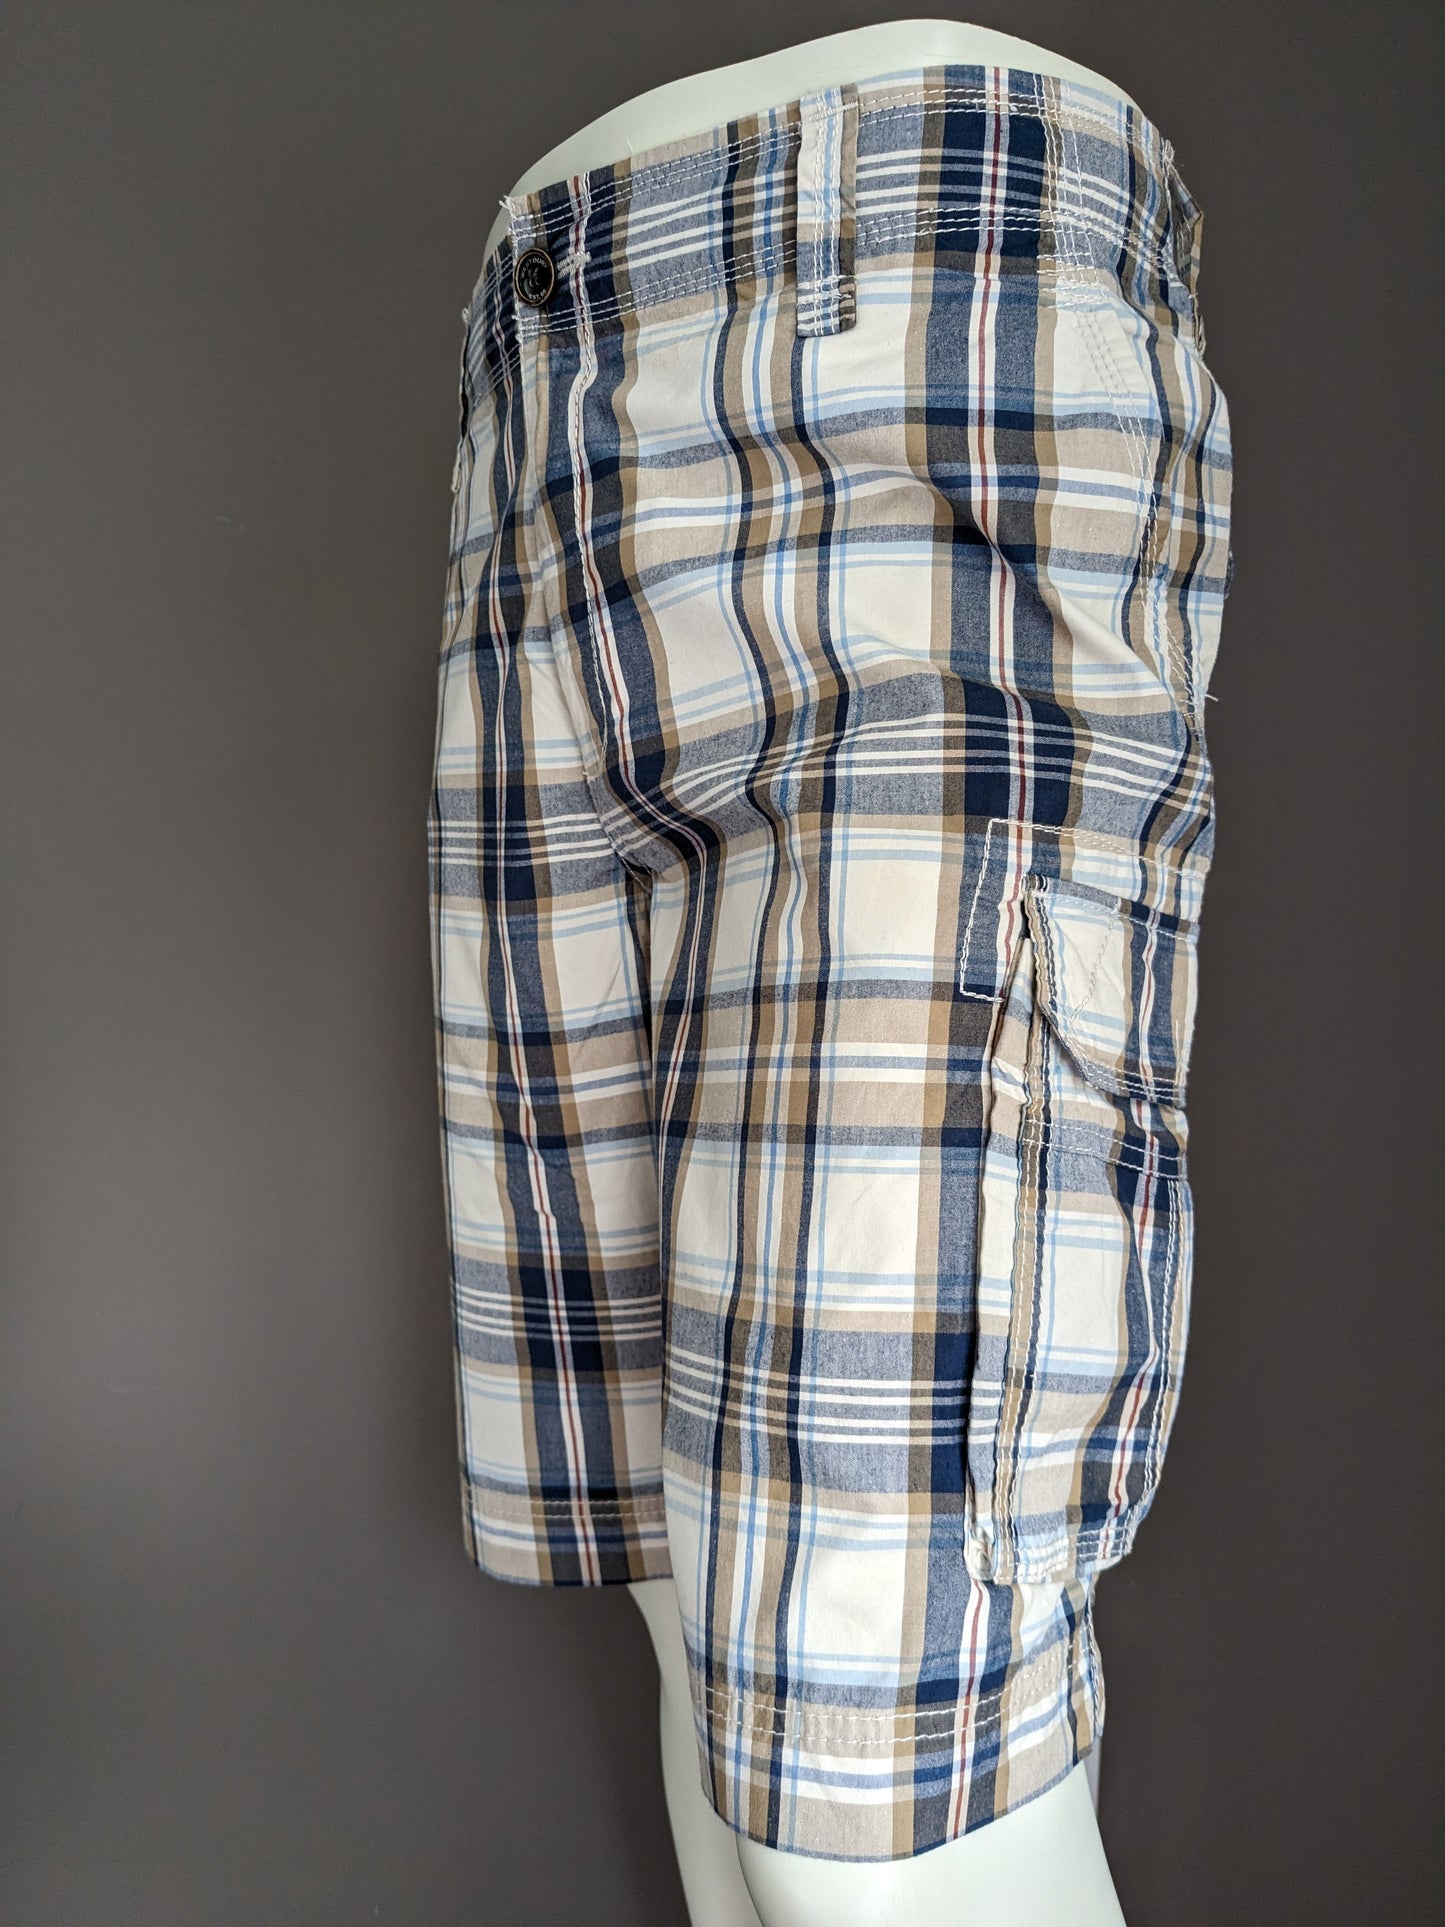 Westbury Shorts con bolsas. Beige Beige Beige revisado. Tamaño 58 / xl.